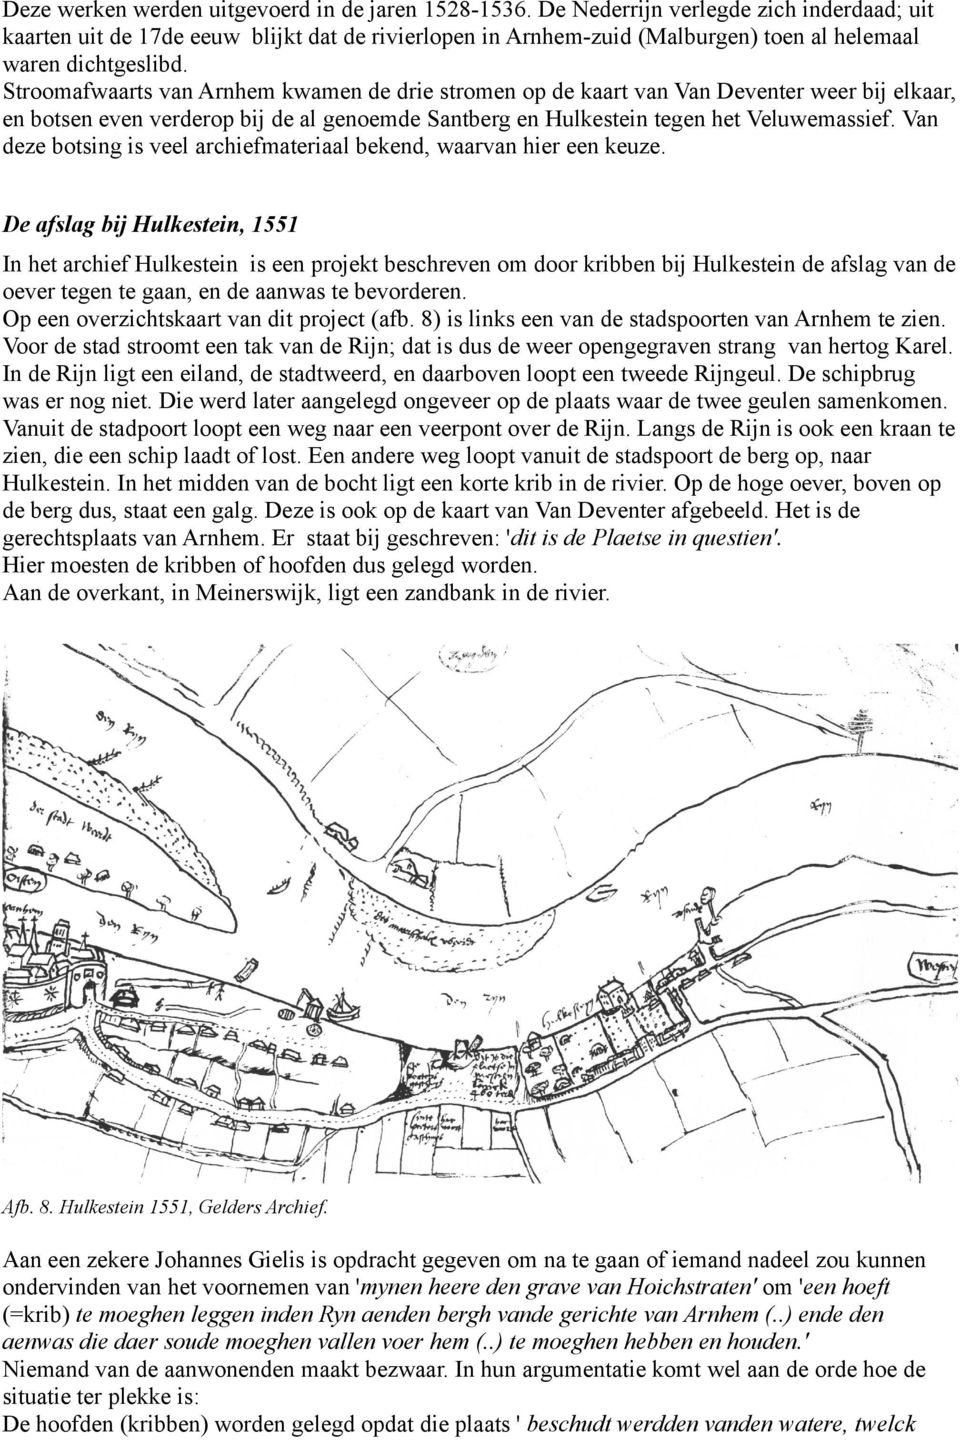 Stroomafwaarts van Arnhem kwamen de drie stromen op de kaart van Van Deventer weer bij elkaar, en botsen even verderop bij de al genoemde Santberg en Hulkestein tegen het Veluwemassief.